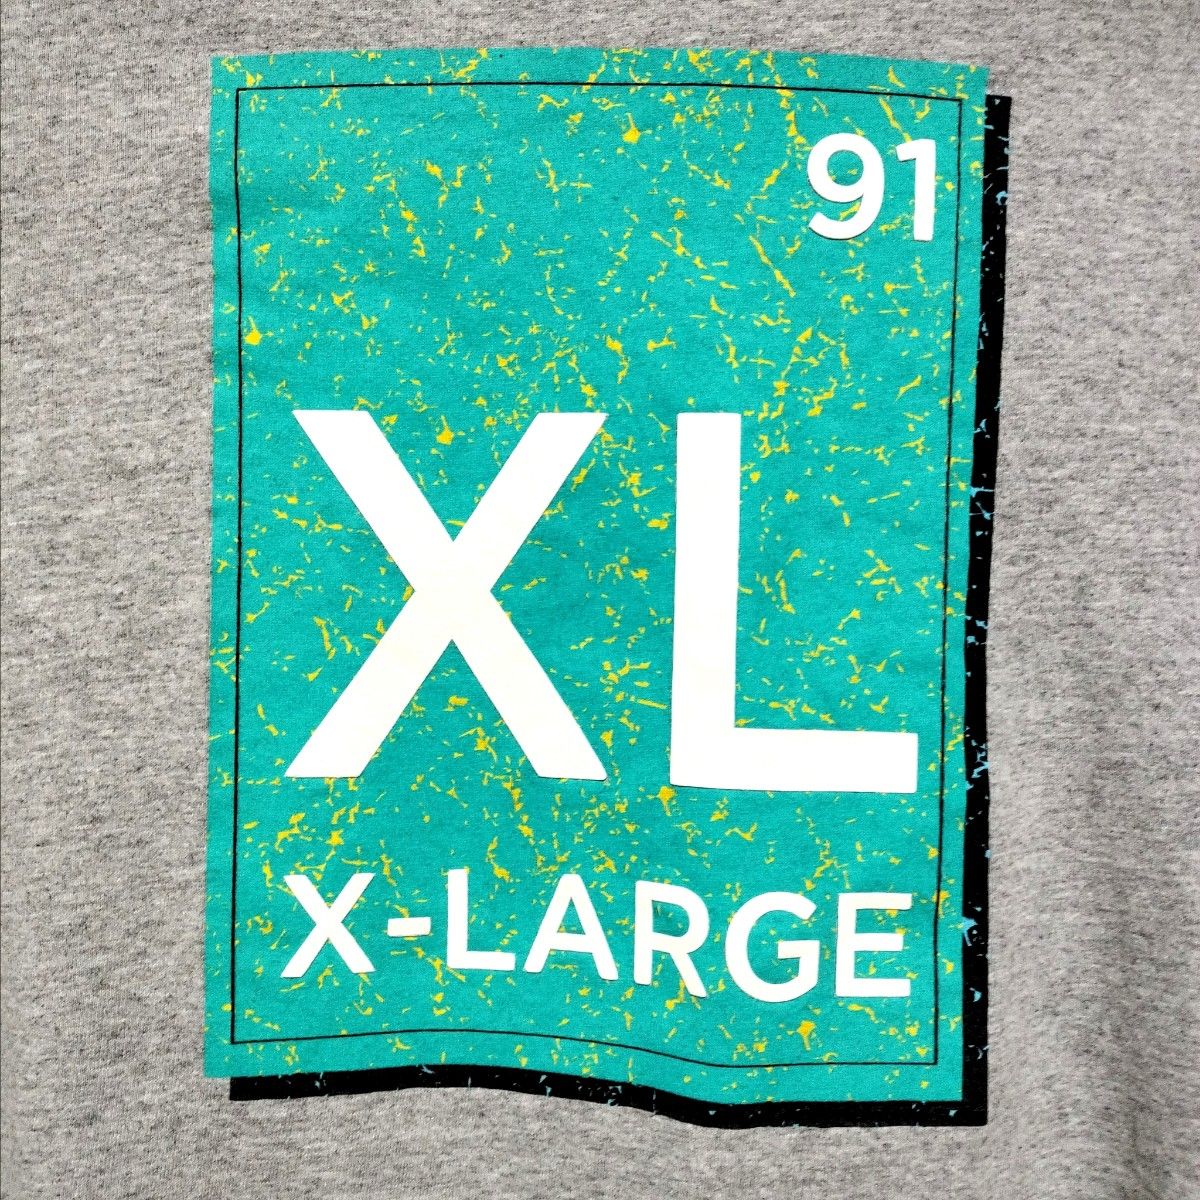 【X-LARGE】エクストララージ プリント ビッグロゴ 半袖 Tシャツ S